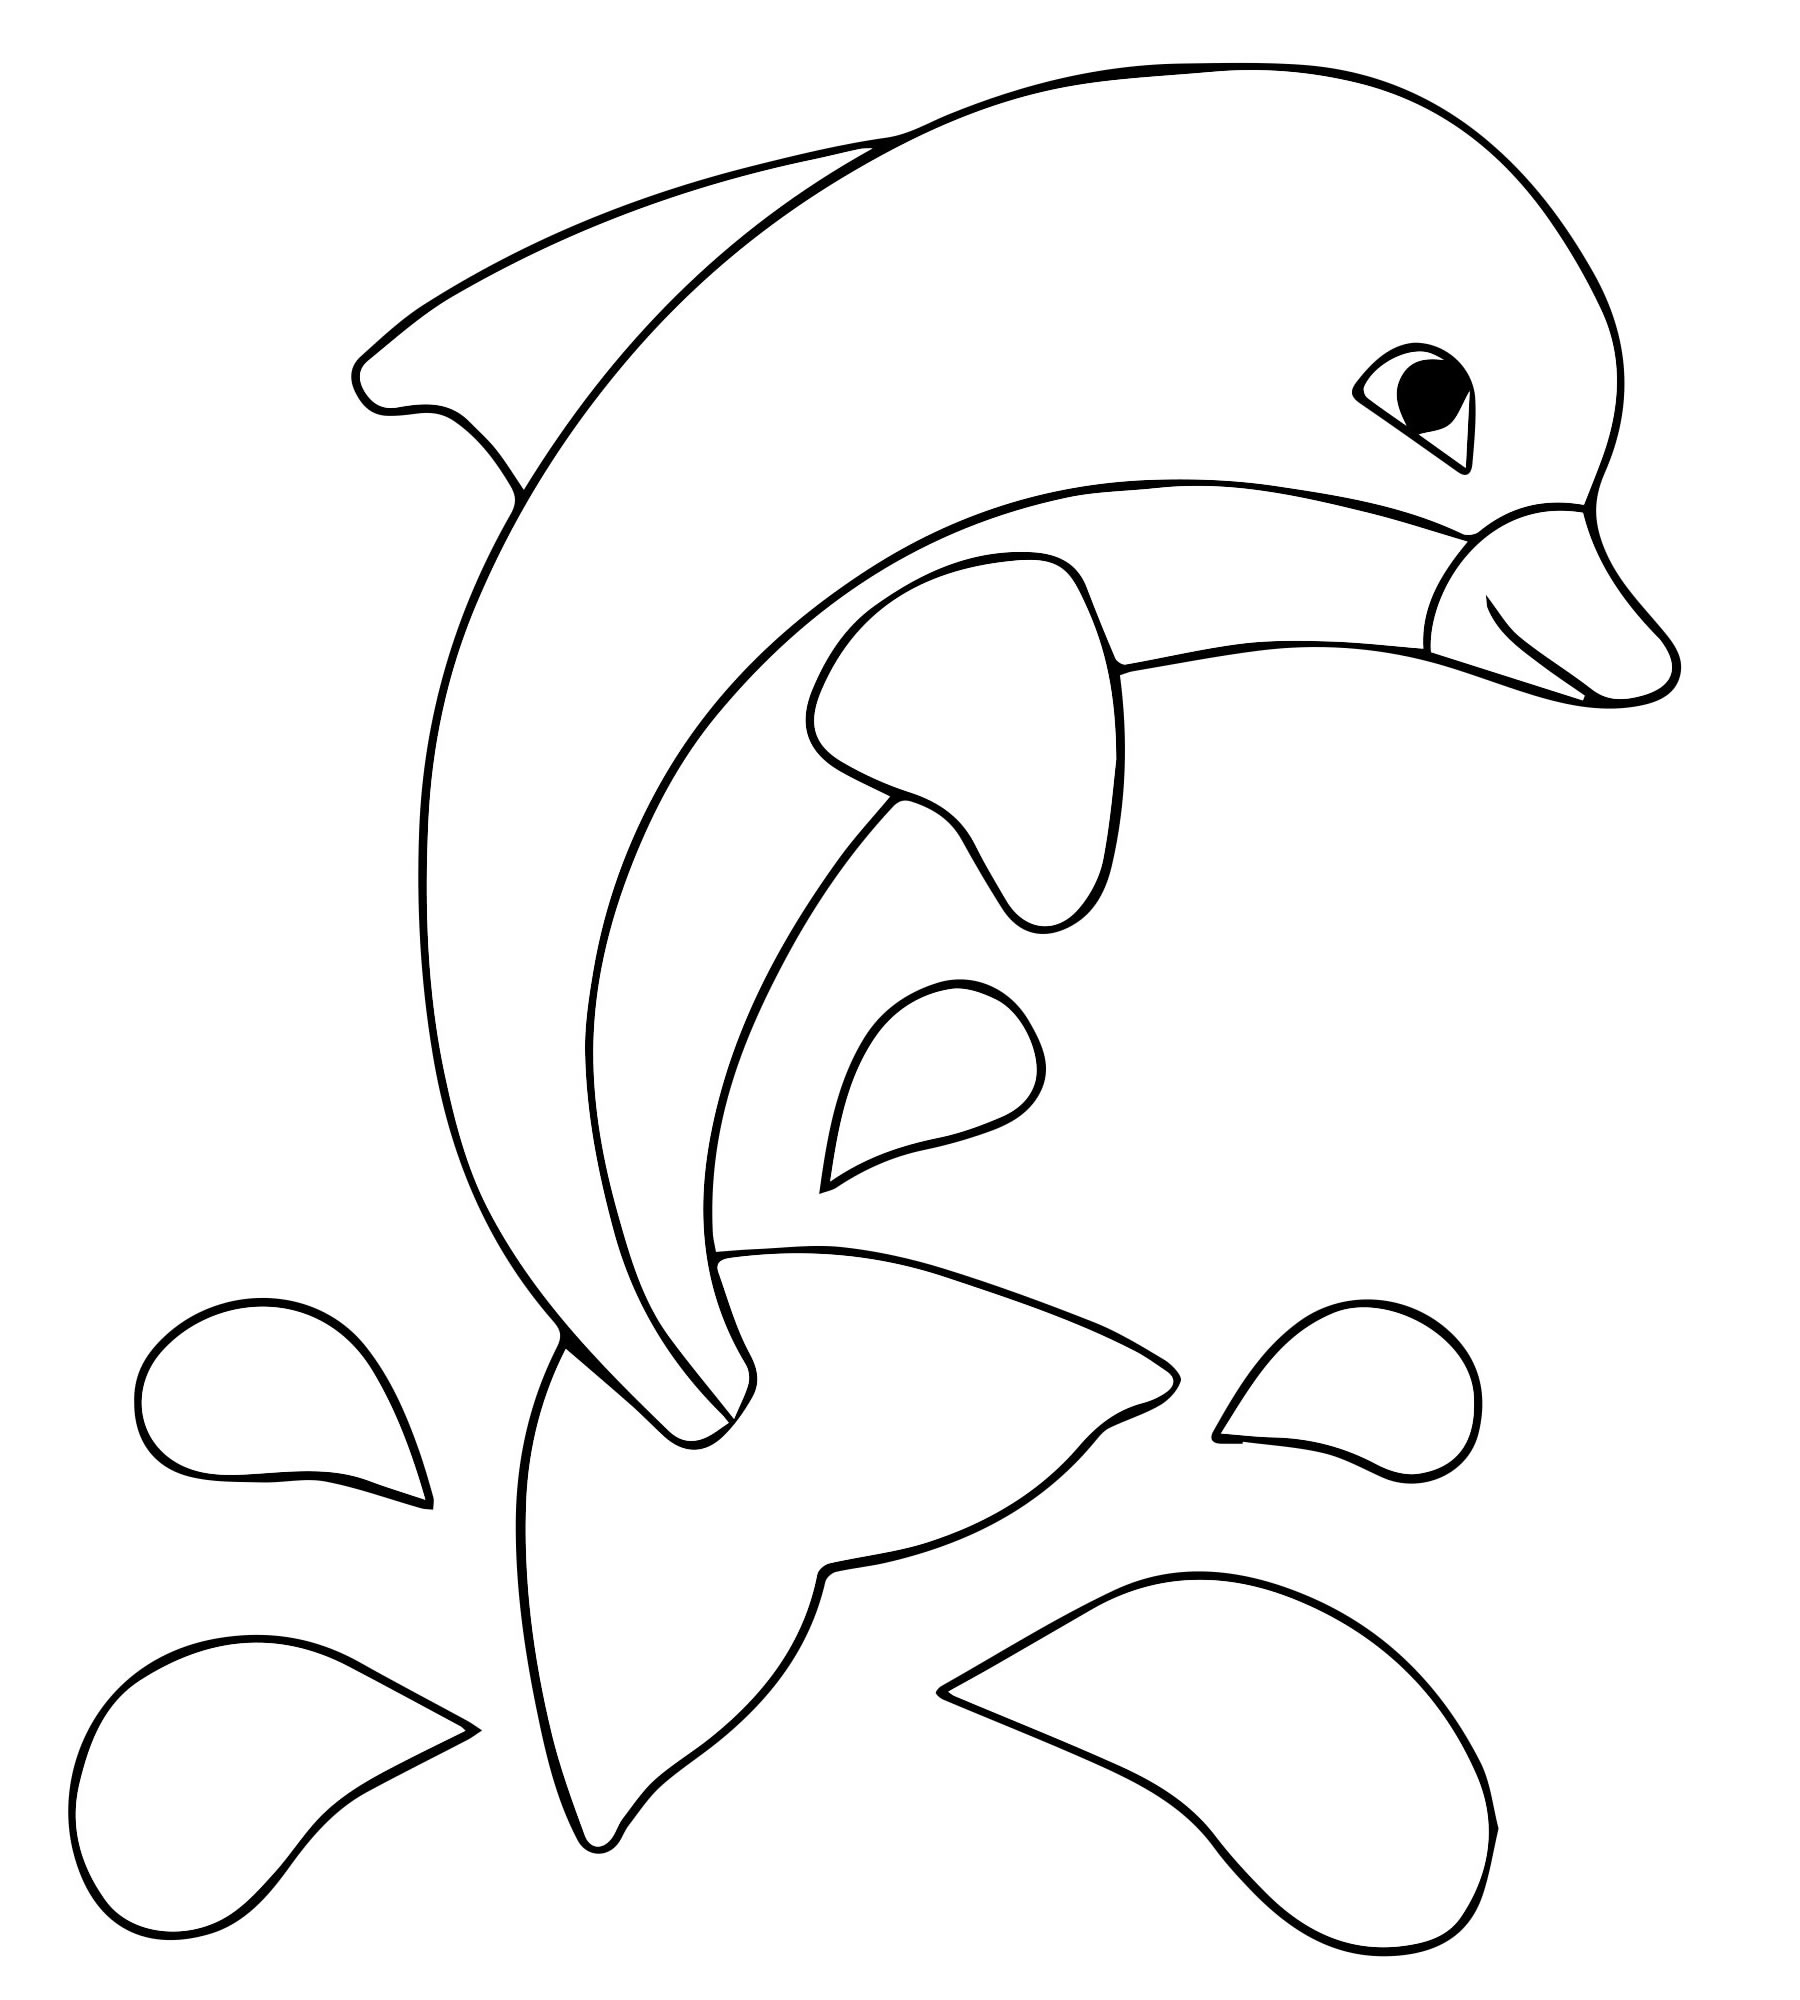 Аппликация дельфин раскраска для детей